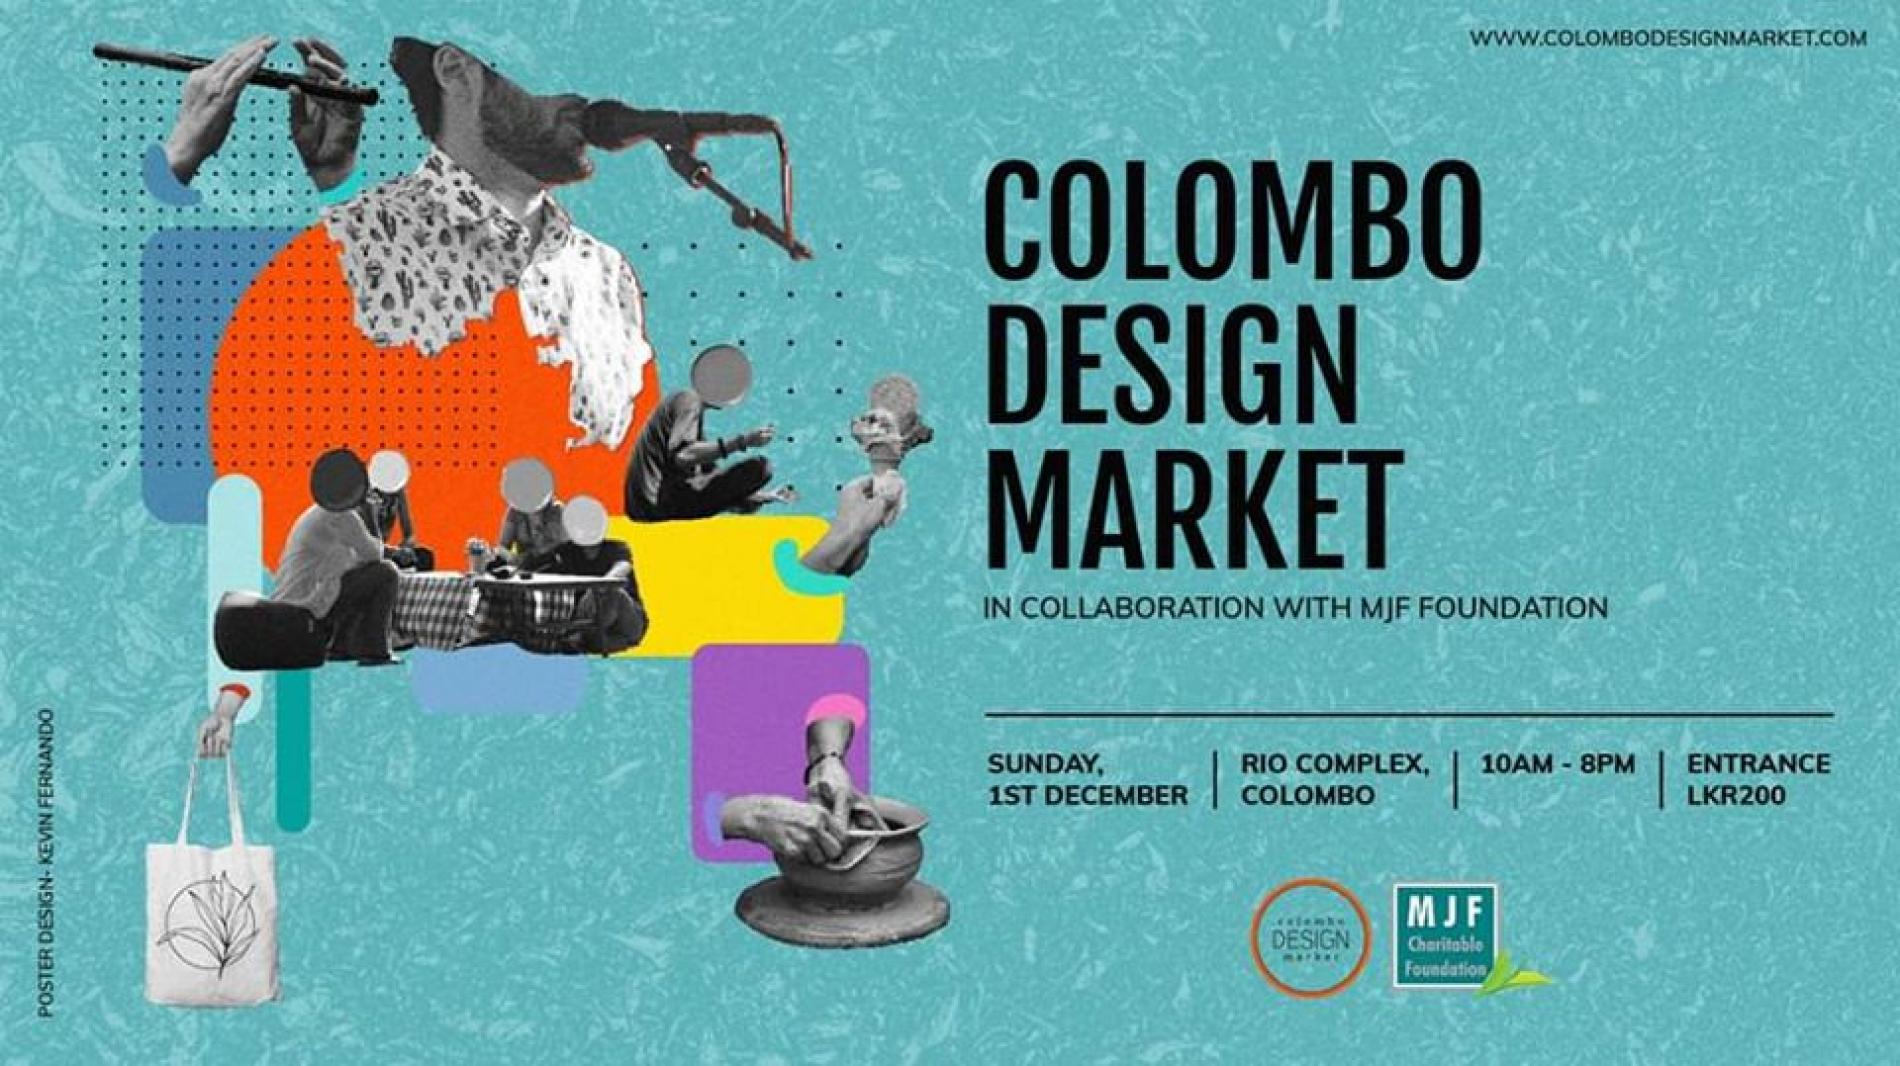 Colombo Design Market